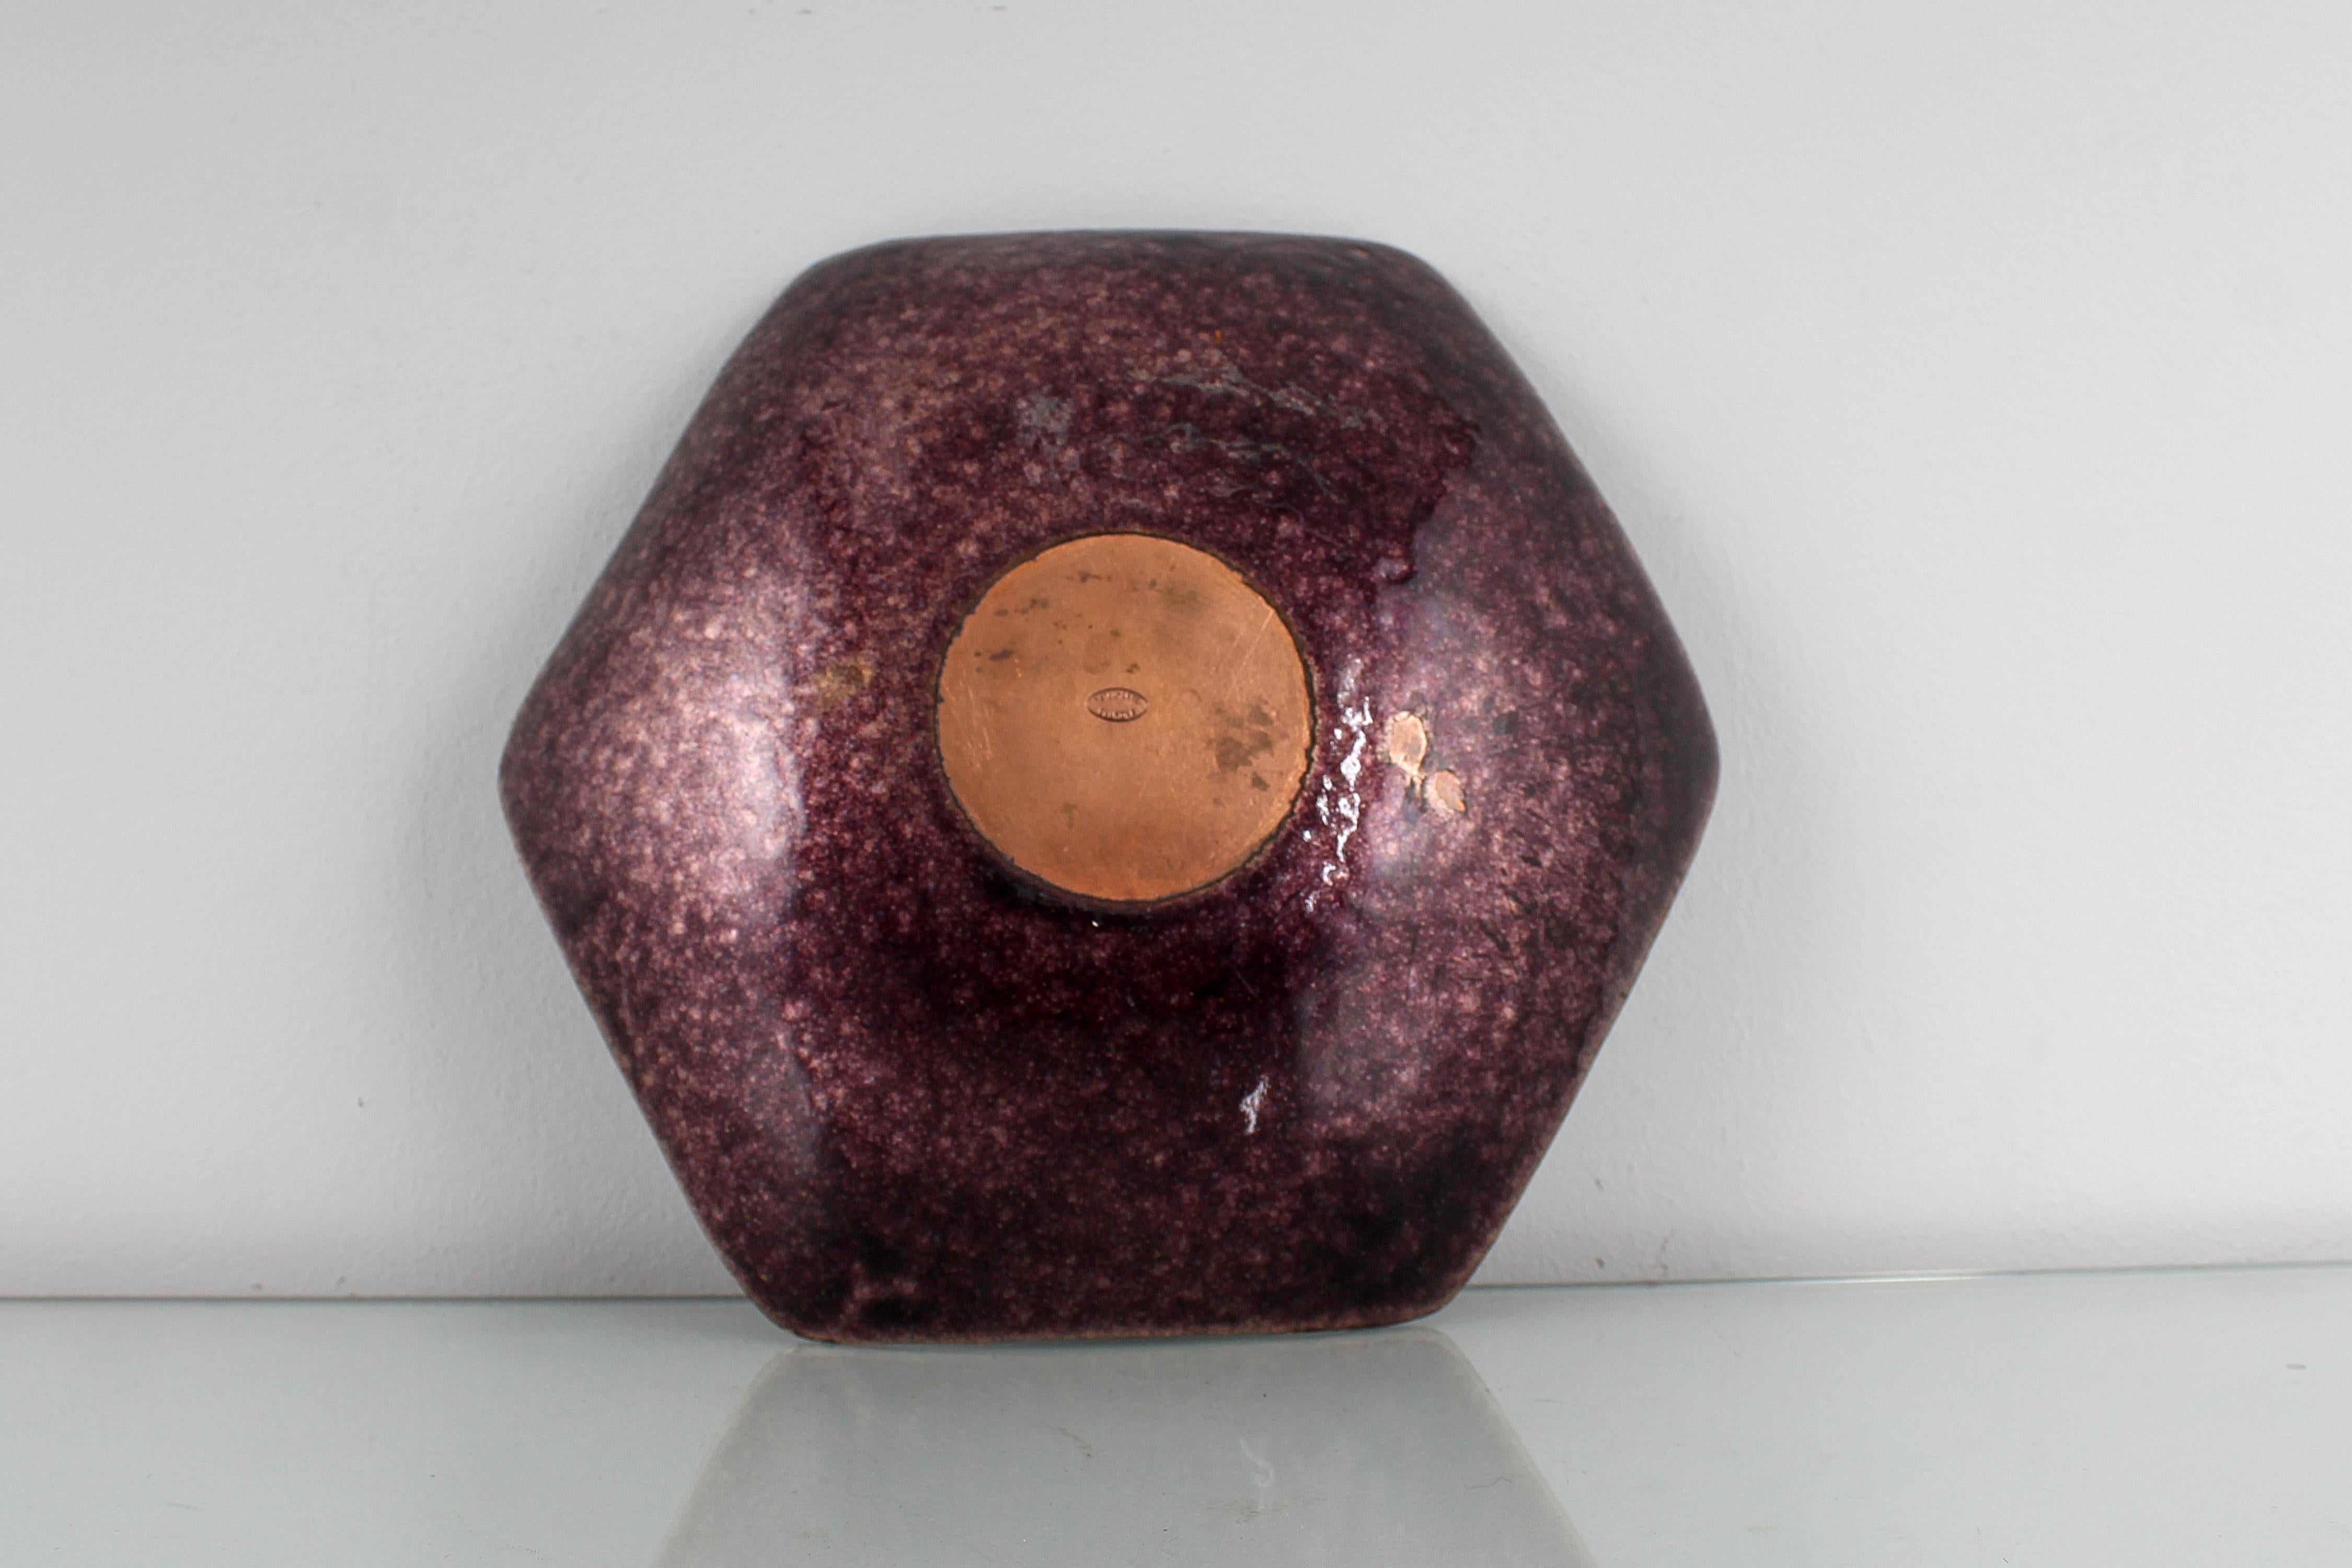 De Poli Style Metal Arte Copper Centerpiece Bowl Polychrome Enamels, Italy 50s For Sale 3